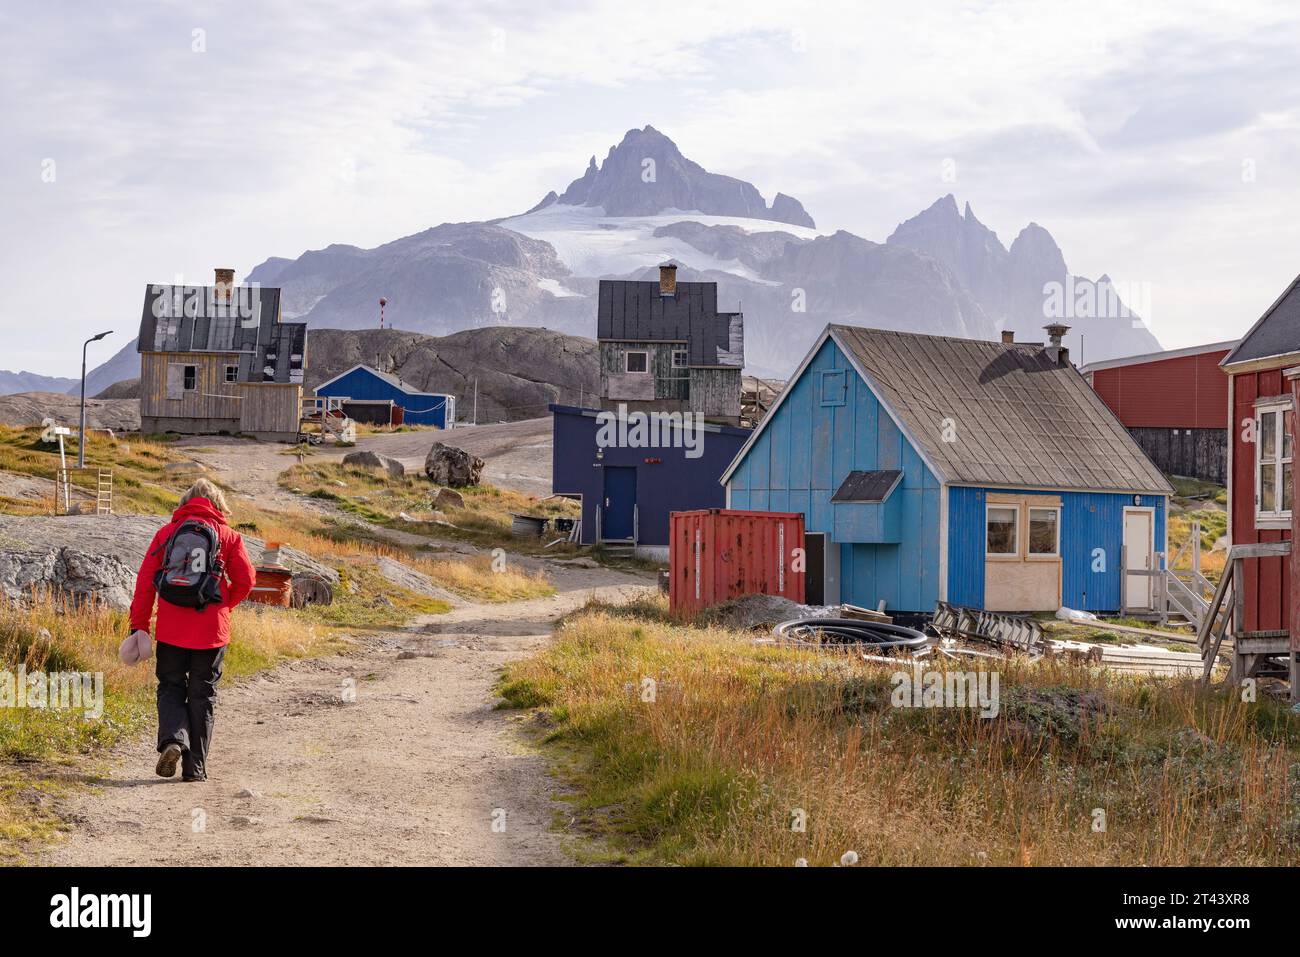 Grönland touristische Spaziergänge zwischen Häusern im kleinen, abgelegenen inuit-Dorf Aappilattoq, POP. 100; Südgrönland. Arktische Reise. Stockfoto